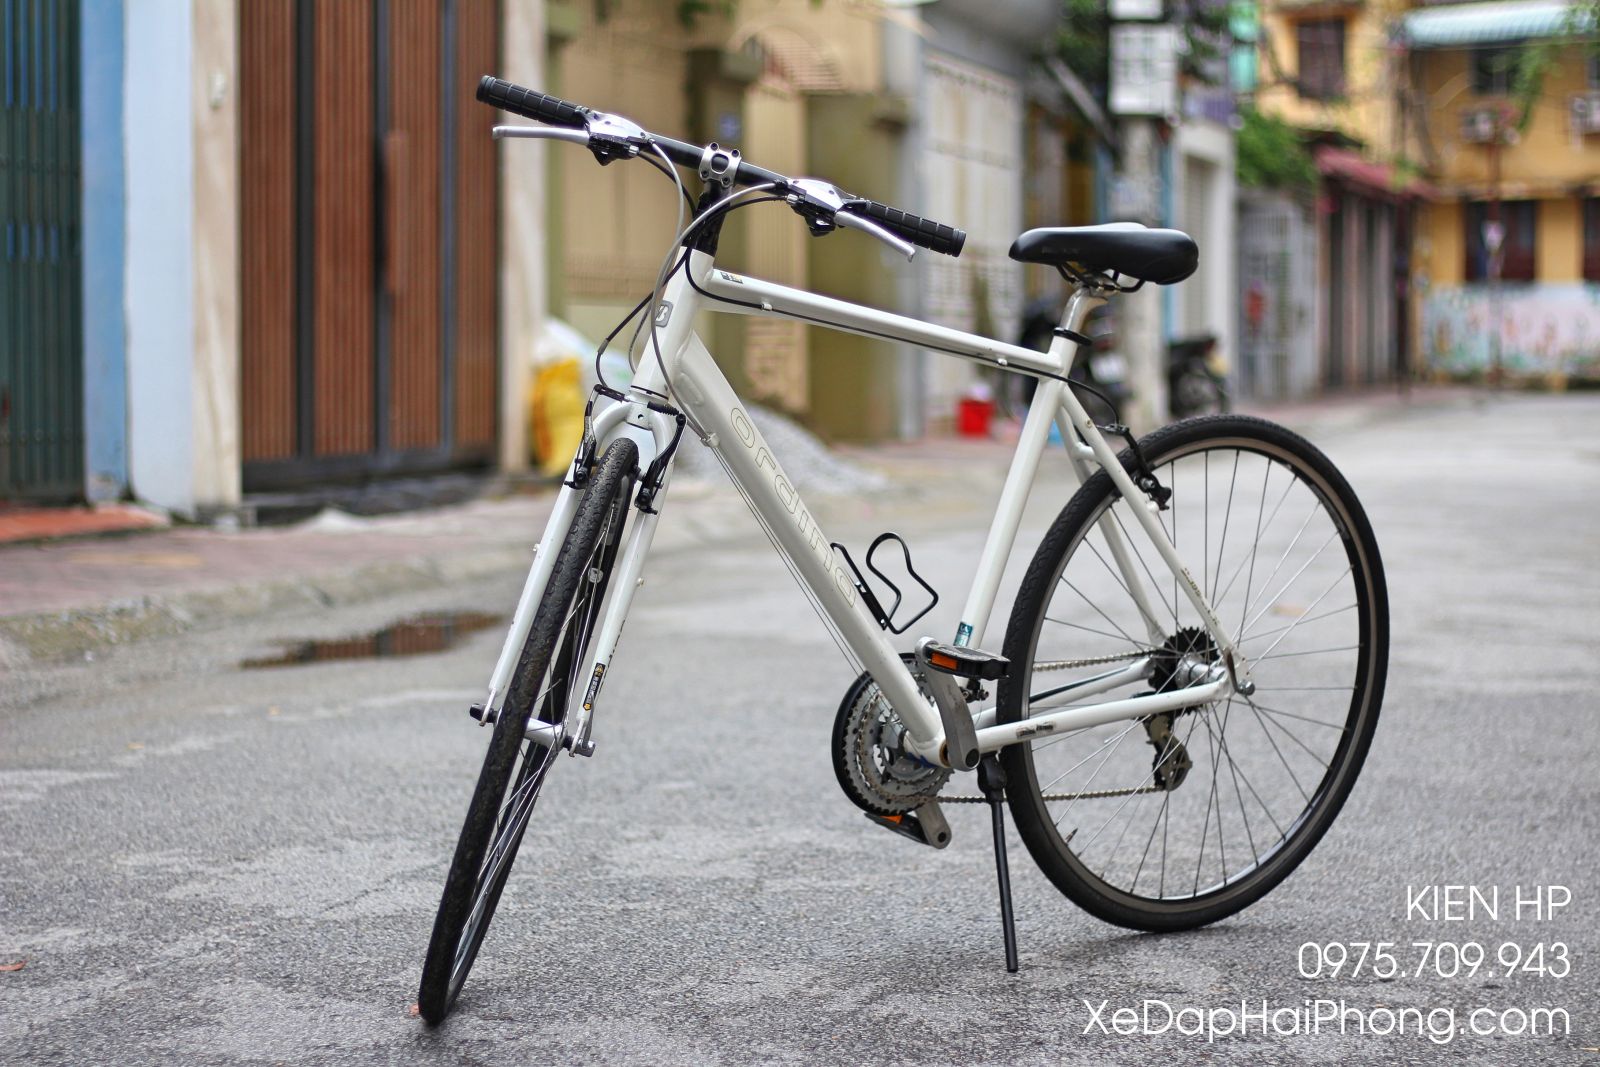 Xe đạp điện trợ lực Bridgestone